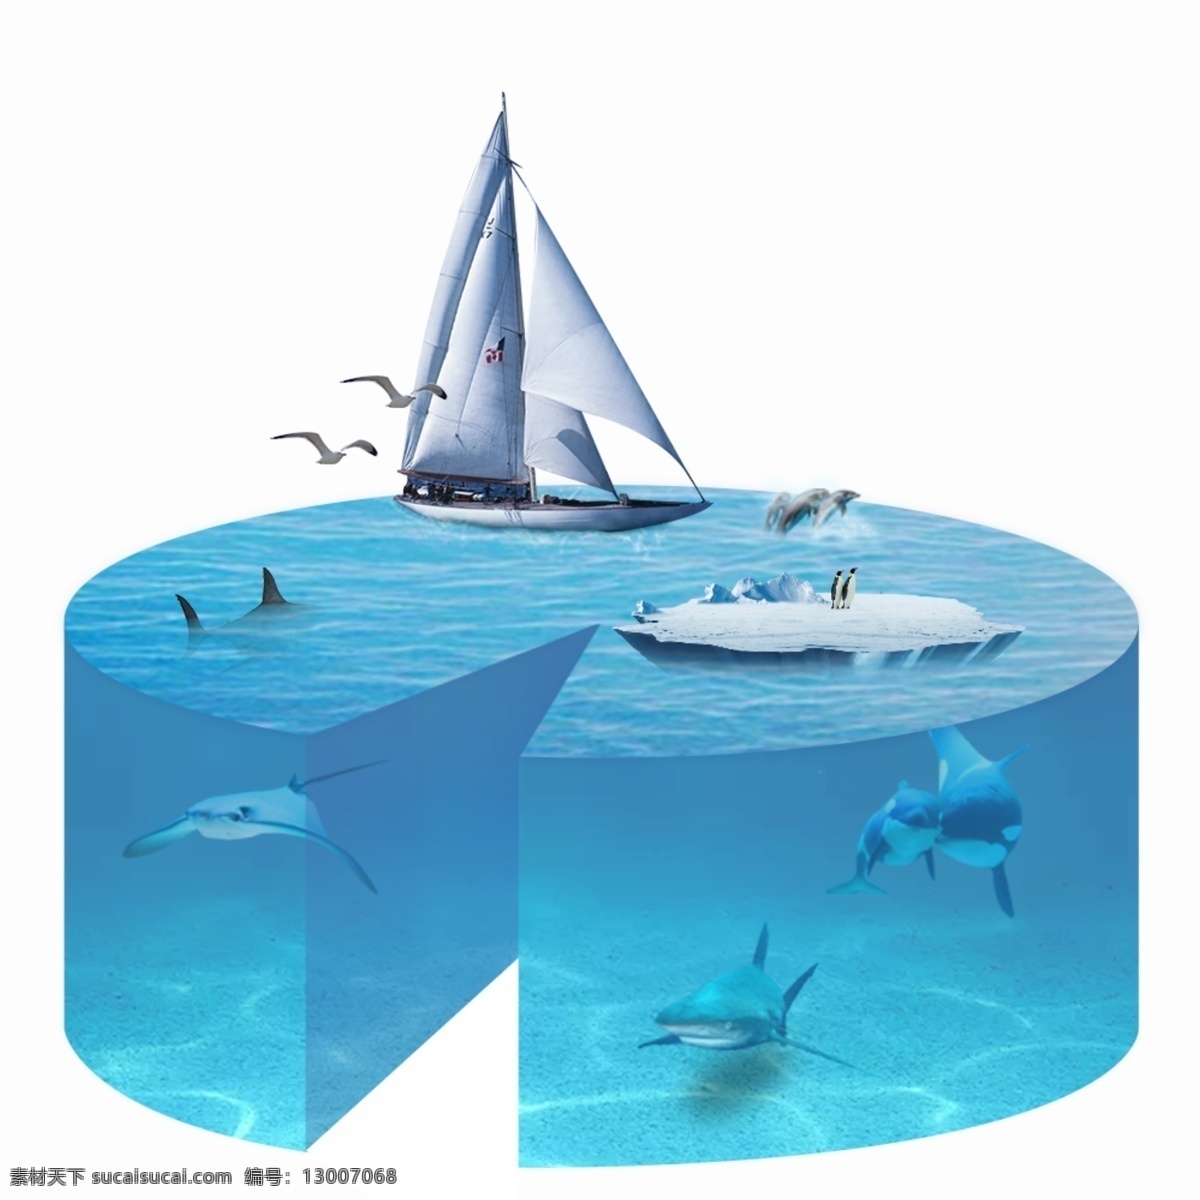 海洋 合成 海报 公益 广告 保护 合成海报 保护海洋 psd源文件 海洋生物